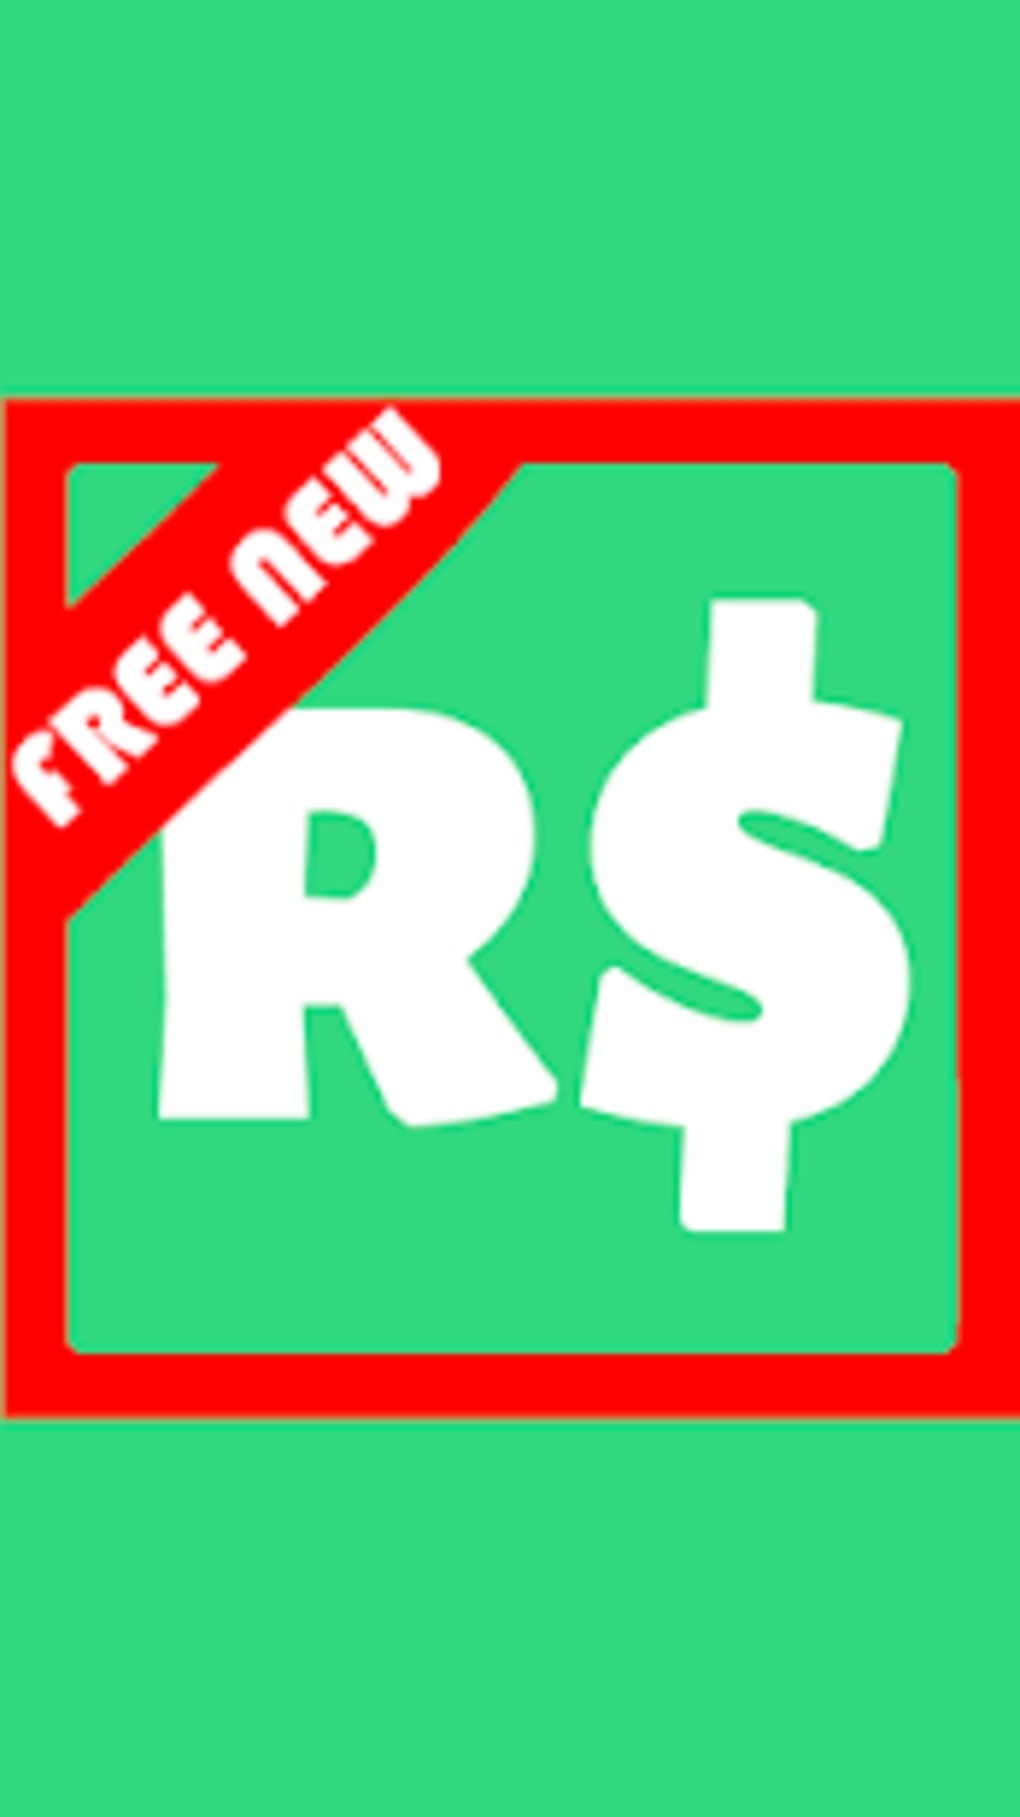 Robux Free Tips Apk Para Android Descargar